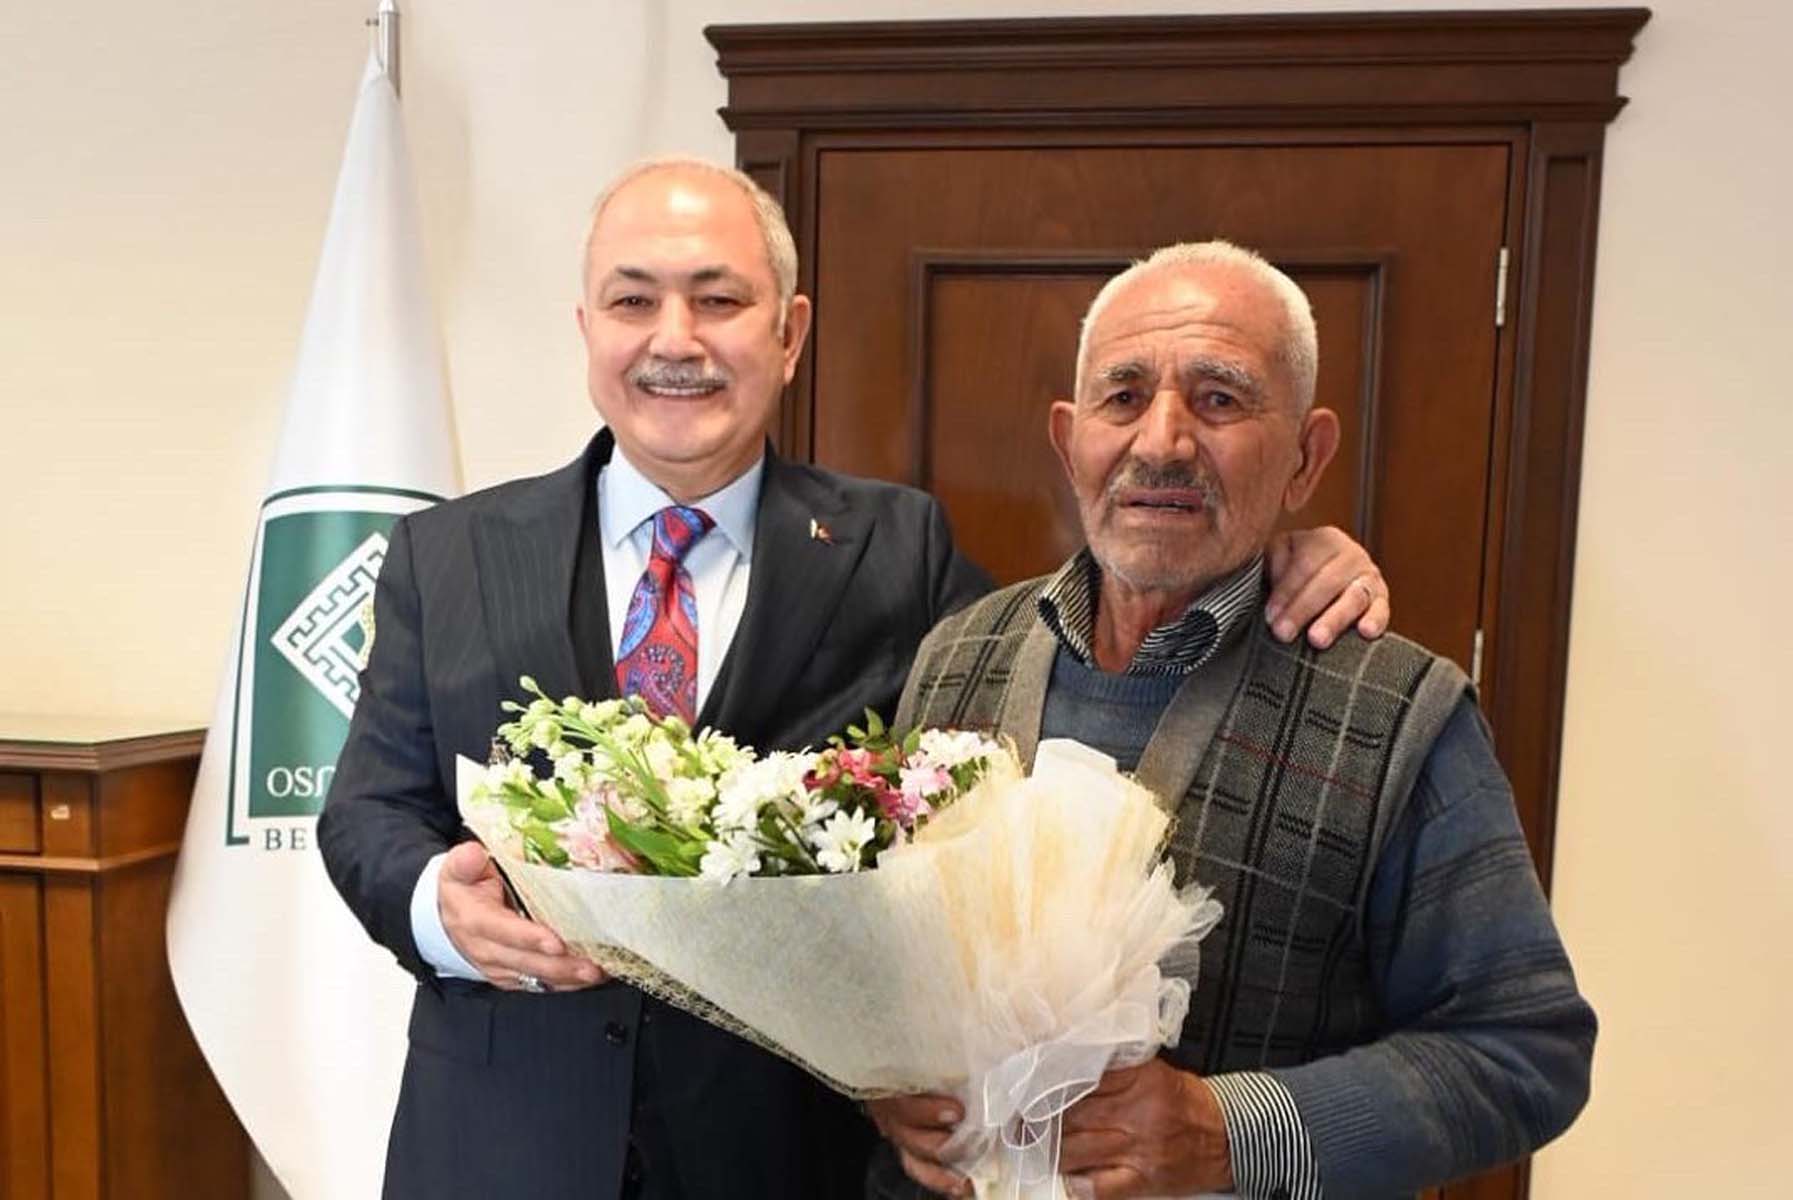 Osmaniye'de zabıtaların tartısını aldığı Ali Budak tartısına kavuştu! Belediye Başkanı Kadir Kara özür diledi, elini öptü: İnsanız hatasız kul olmaz